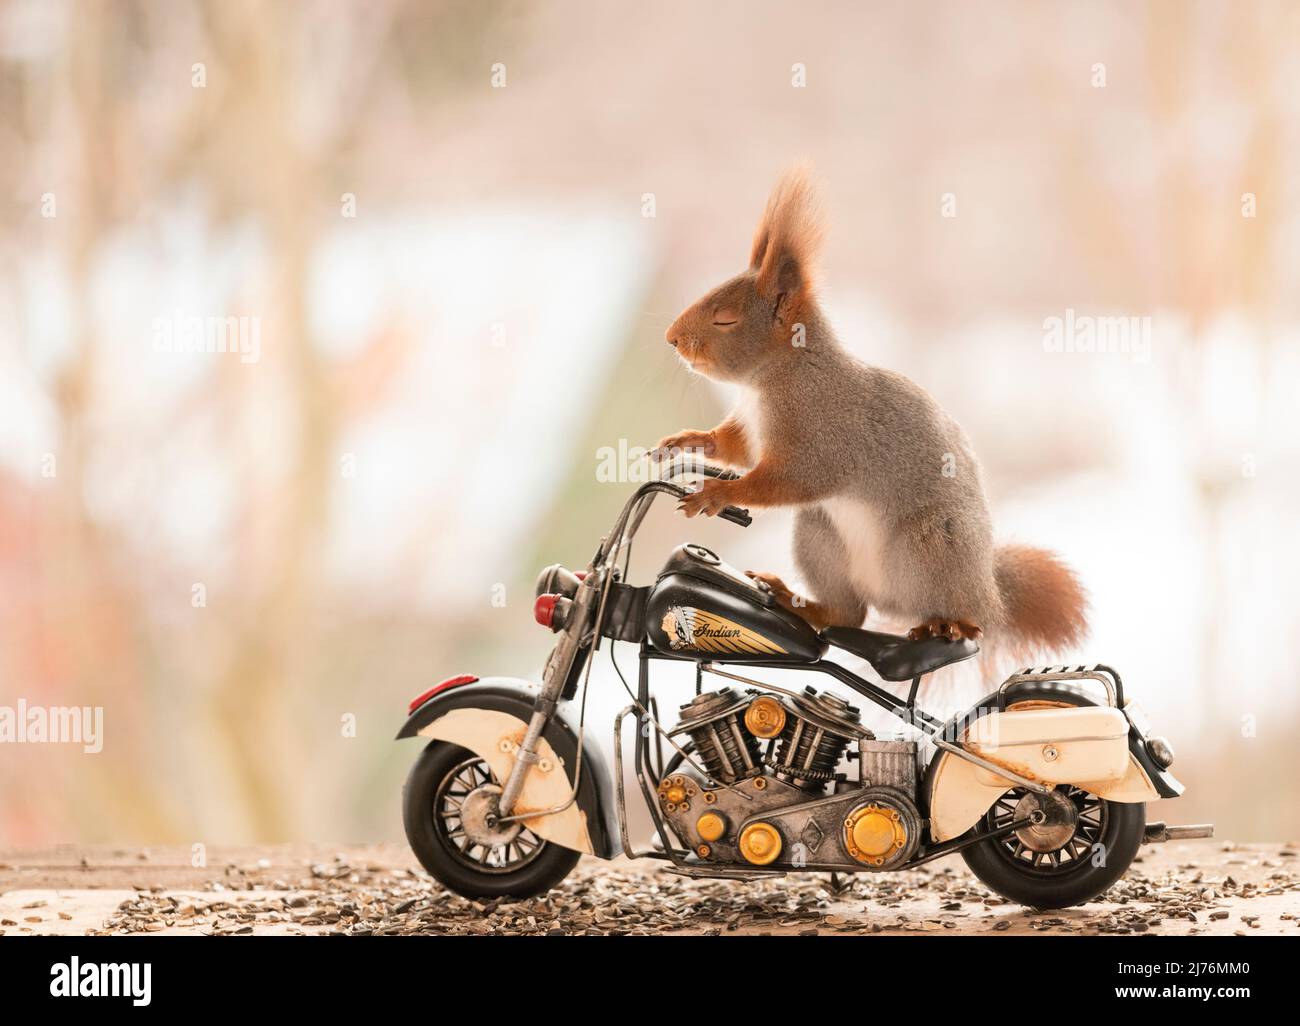 Rotes Eichhörnchen steht auf einem indischen Fahrrad Stockfoto